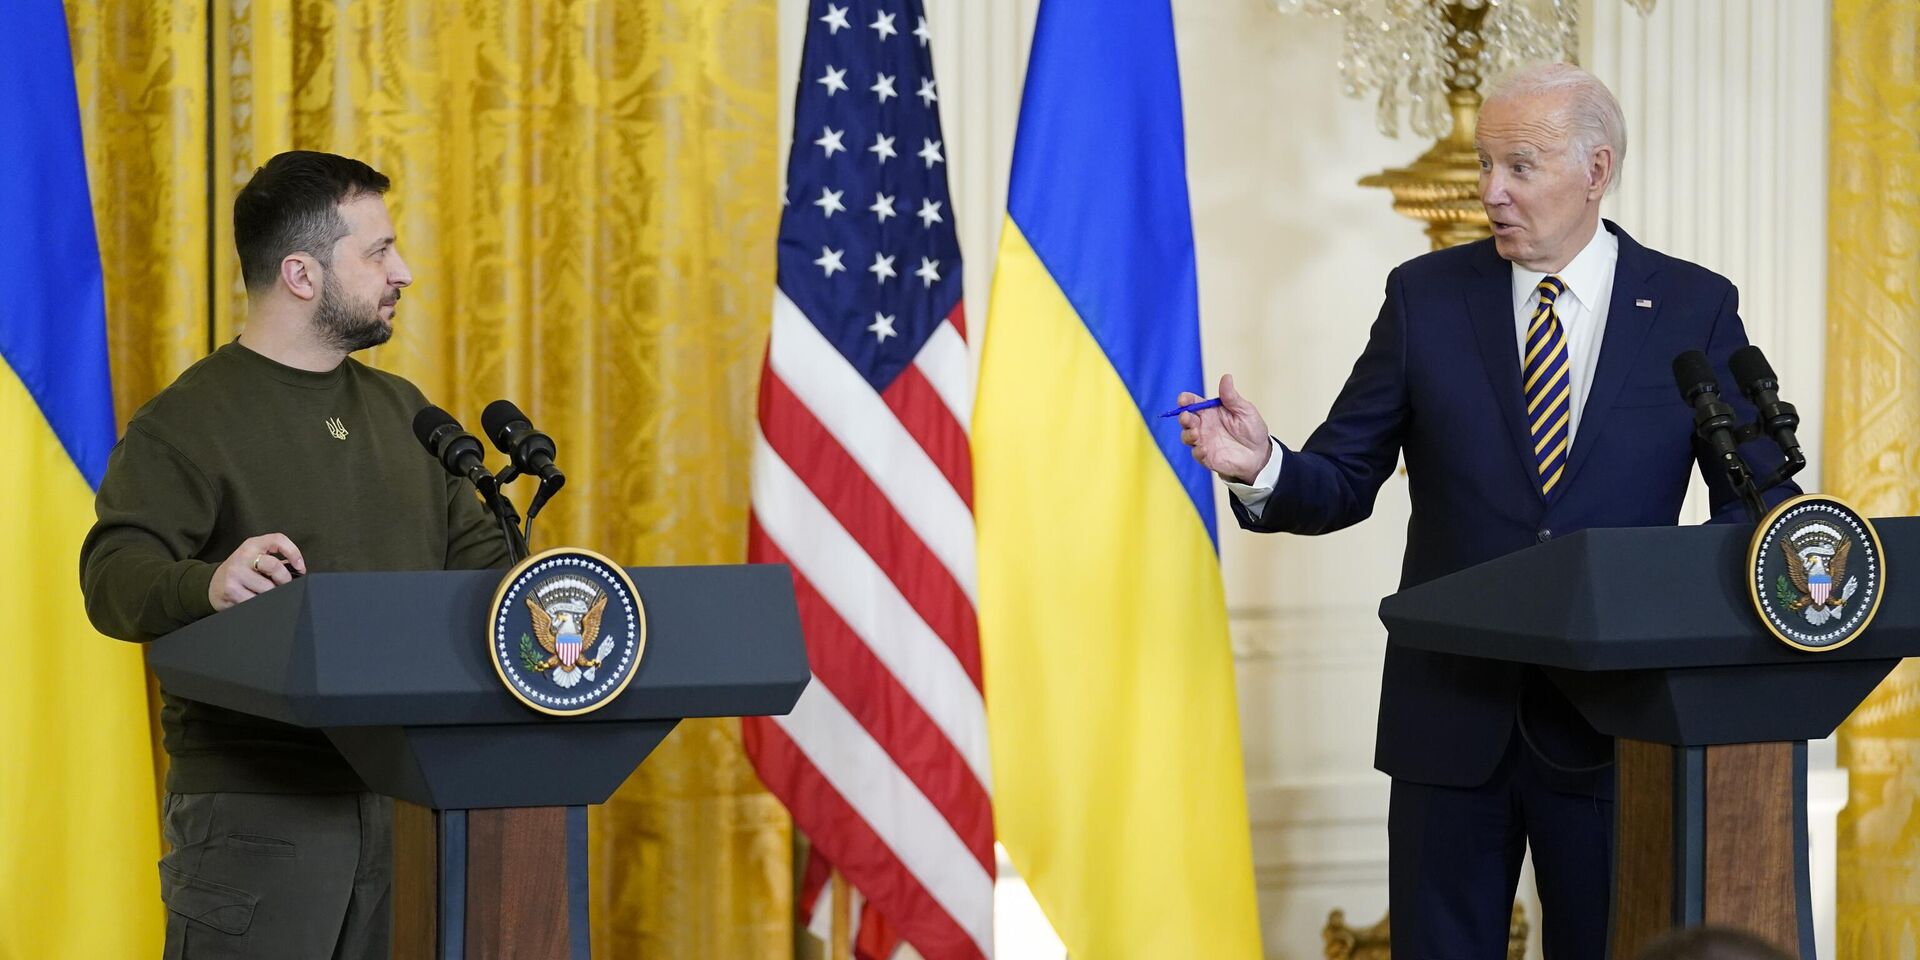 Президент США Джо Байден и президент Украины Владимир Зеленский во время пресс-конференции в Белом доме в Вашингтоне. 21 декабря 2022 года - ИноСМИ, 1920, 09.02.2023